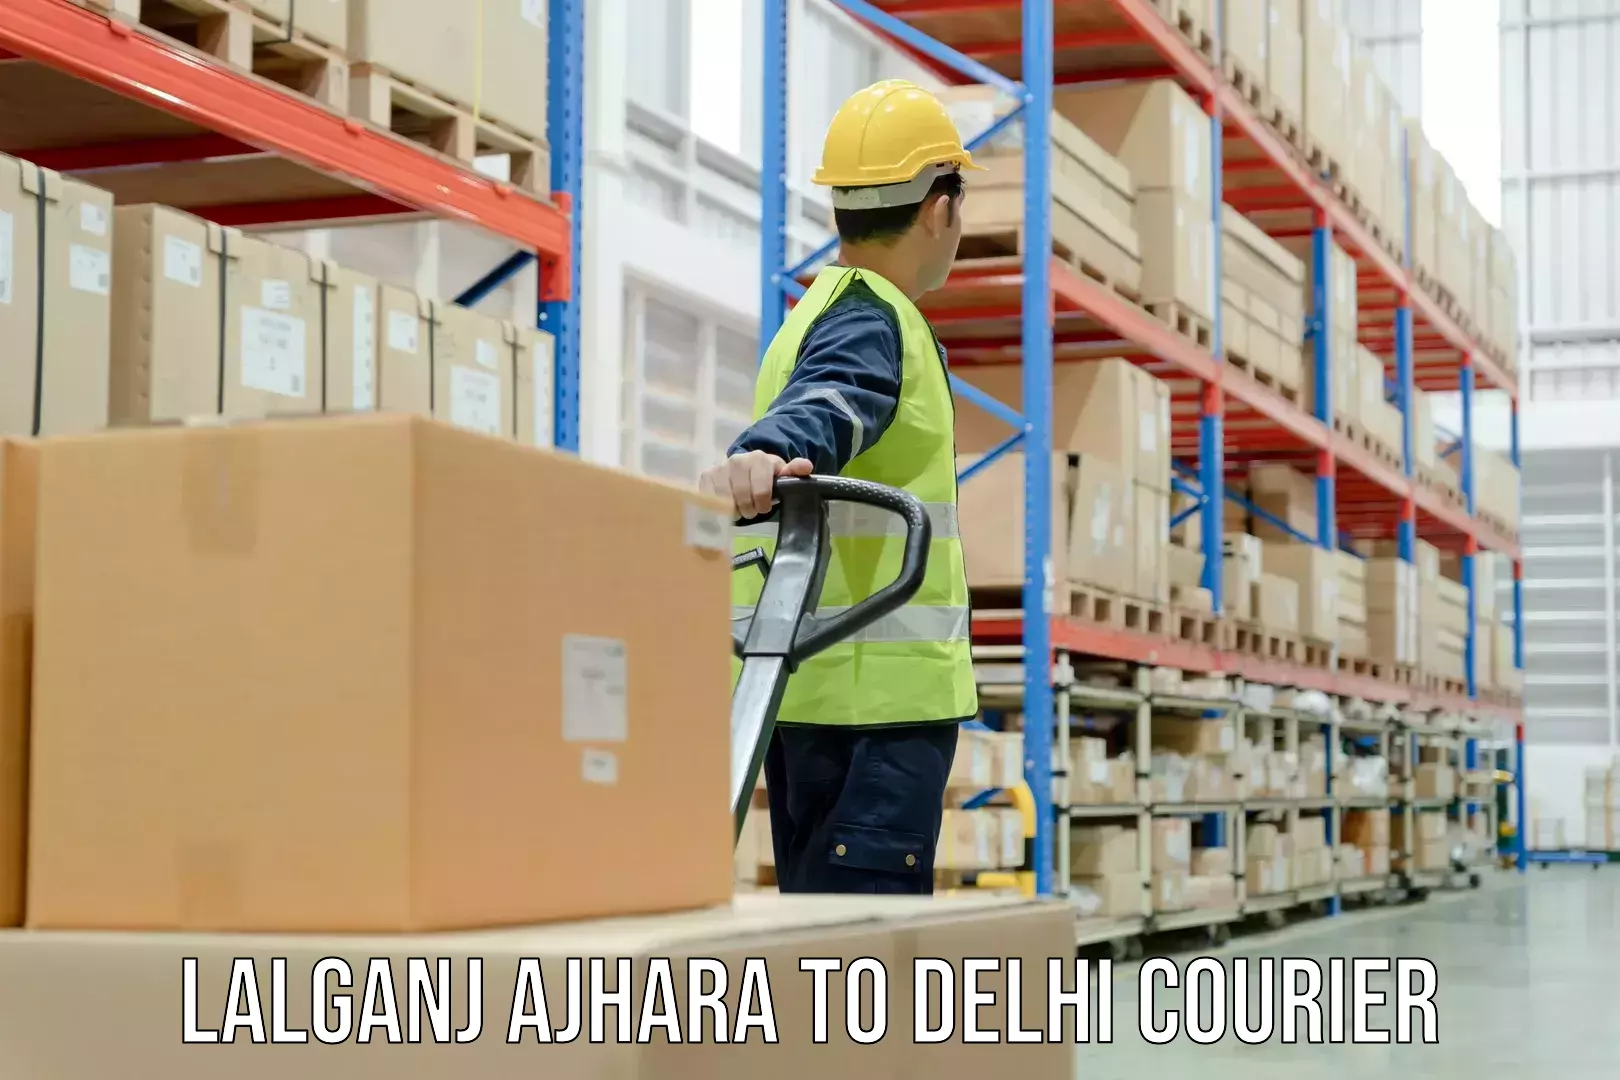 Customized shipping options Lalganj Ajhara to Ramesh Nagar